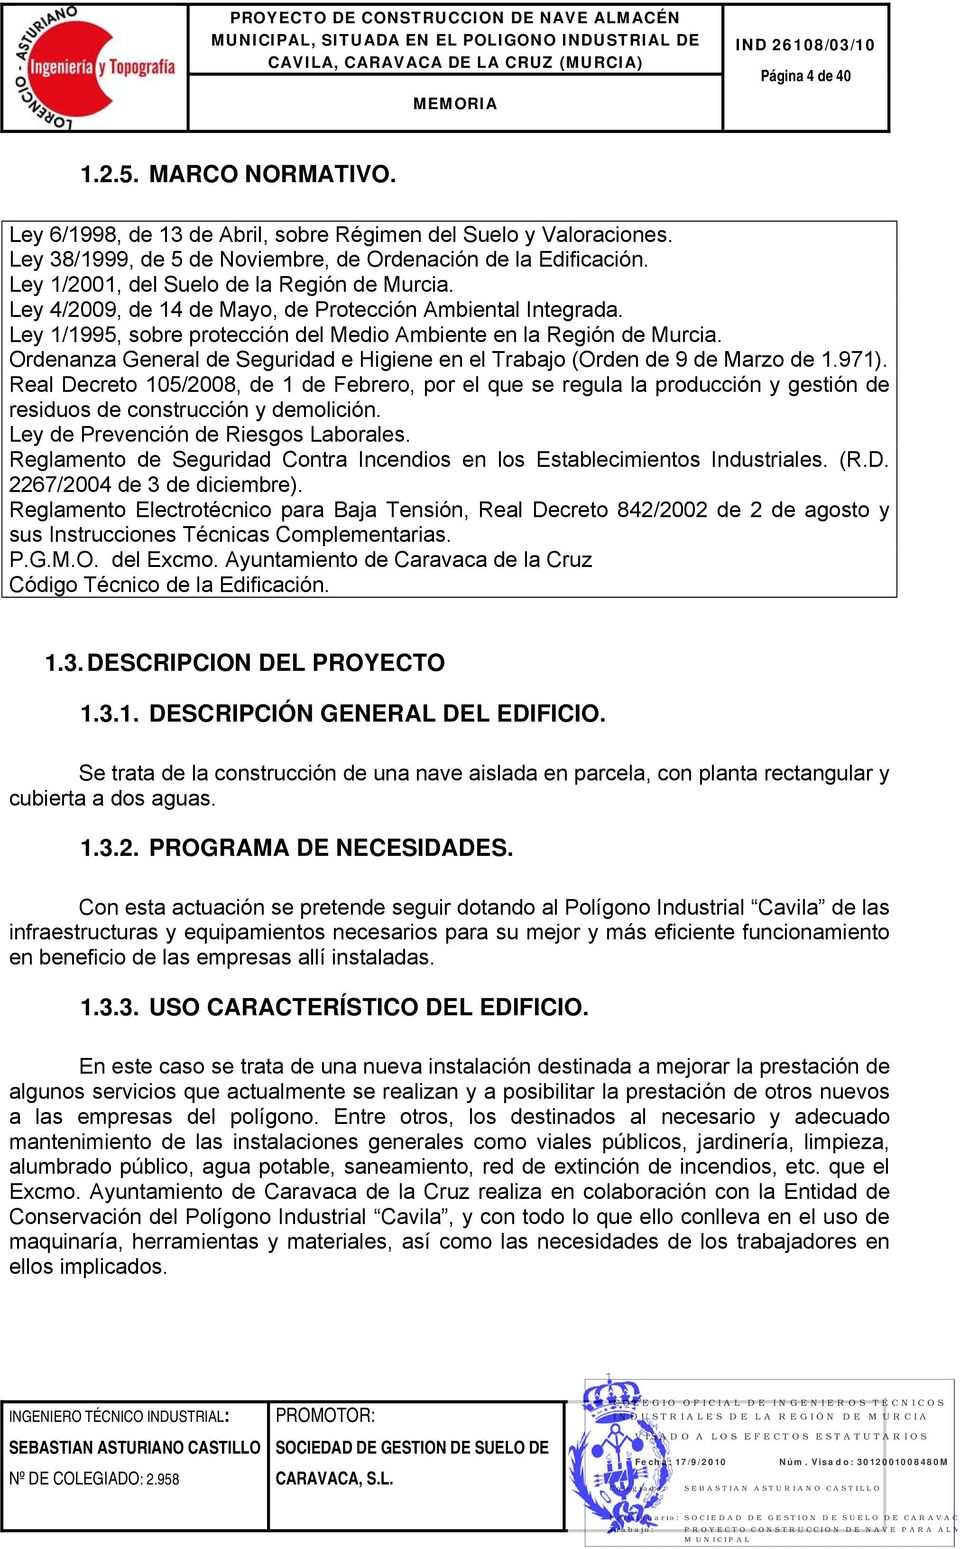 Ley 1/1995, sobre protección del Medio Ambiente en la Región de Murcia. Ordenanza General de Seguridad e Higiene en el Trabajo (Orden de 9 de Marzo de 1.971).